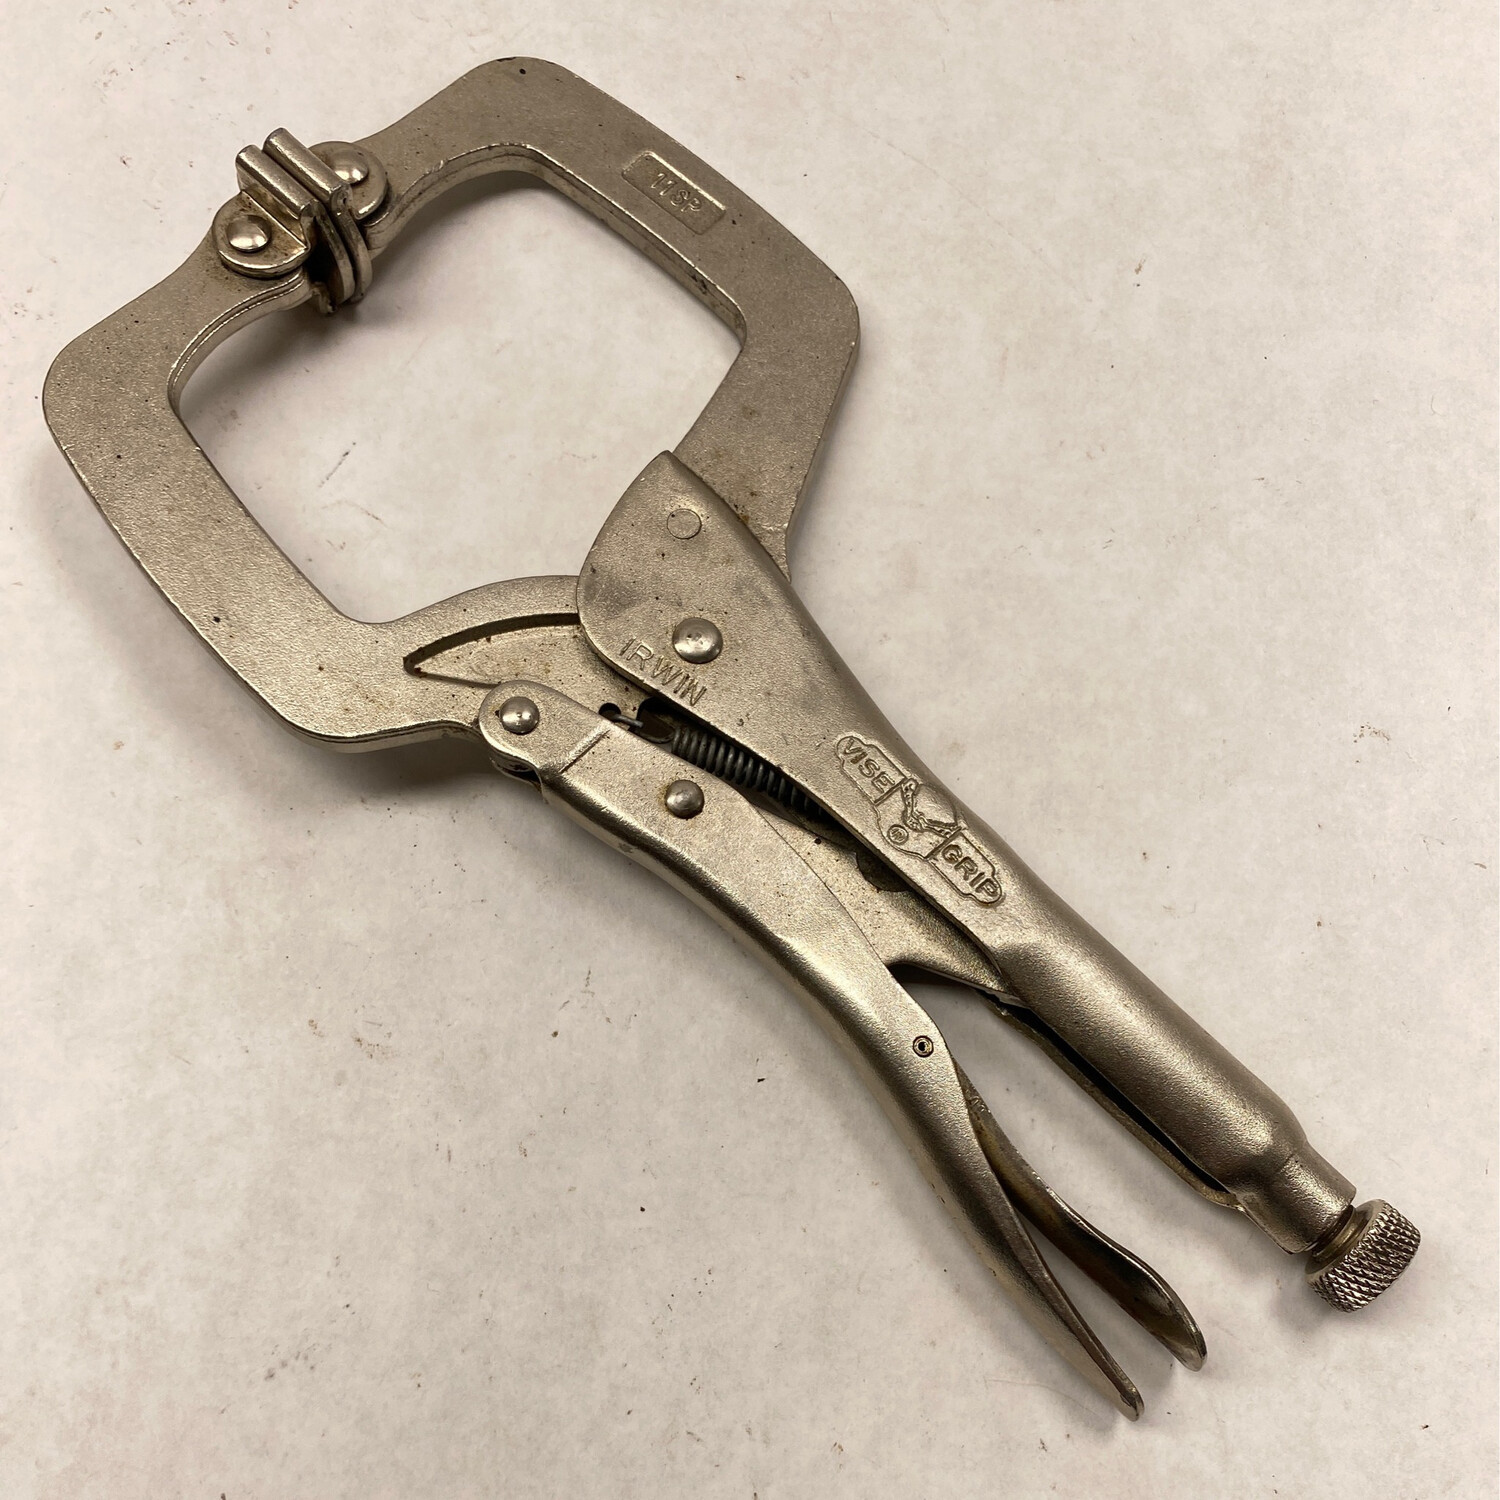 Irwin Vice Grip 11” C-Clamp Locking Pliers W/ Swivel Pads, 11SP